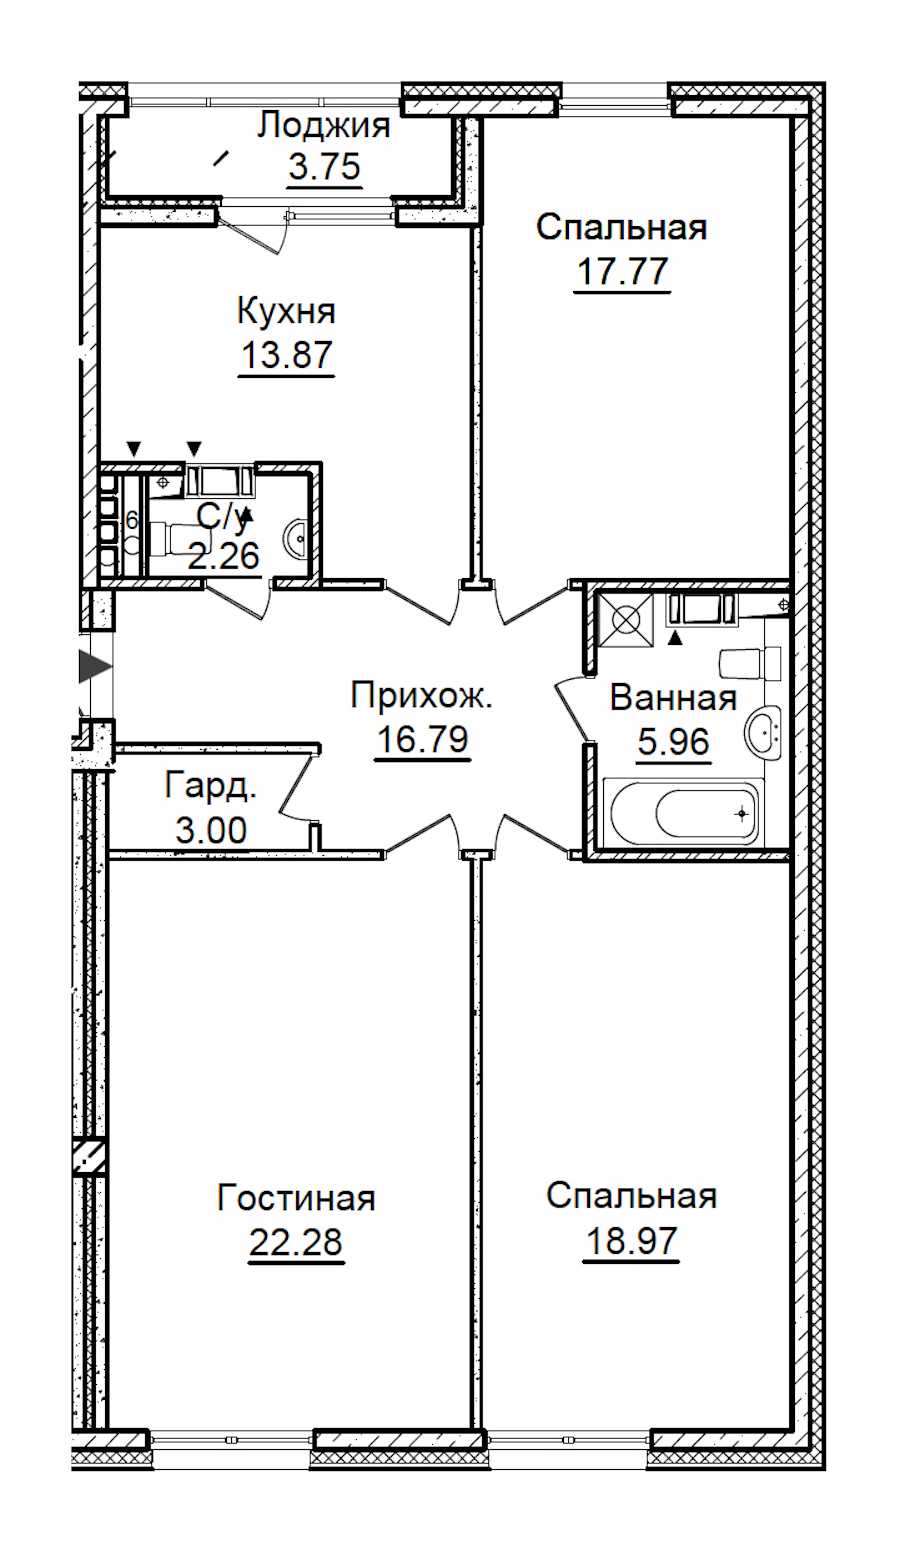 Трехкомнатная квартира в : площадь 102.78 м2 , этаж: 6 – купить в Санкт-Петербурге